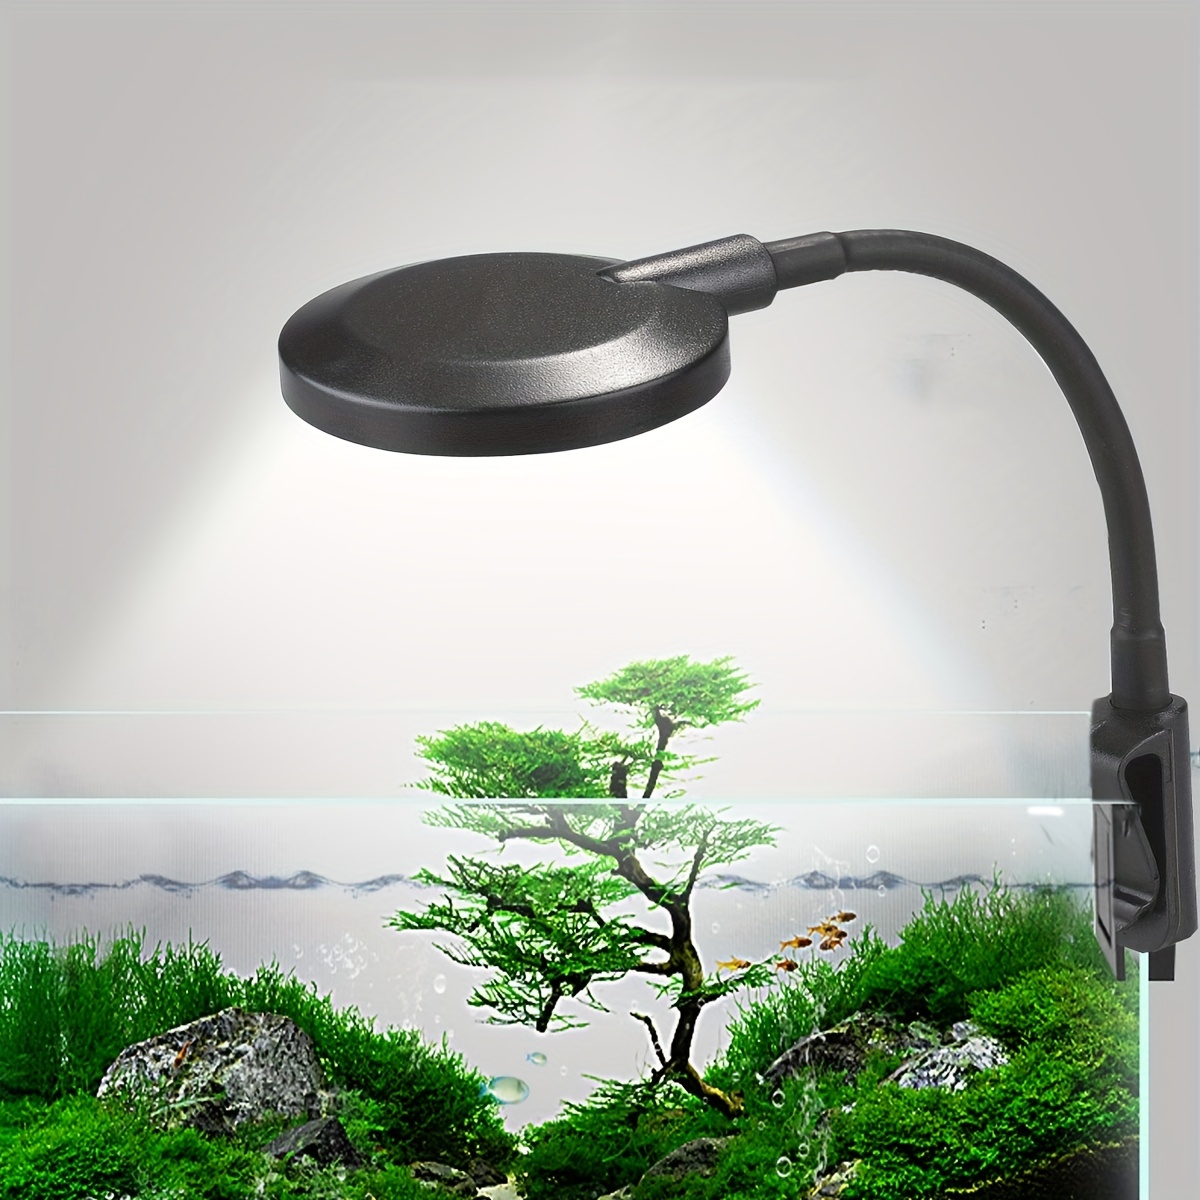 

Brighten Up Your Aquarium With This Small Clamp Led Usb Aquarium Light!